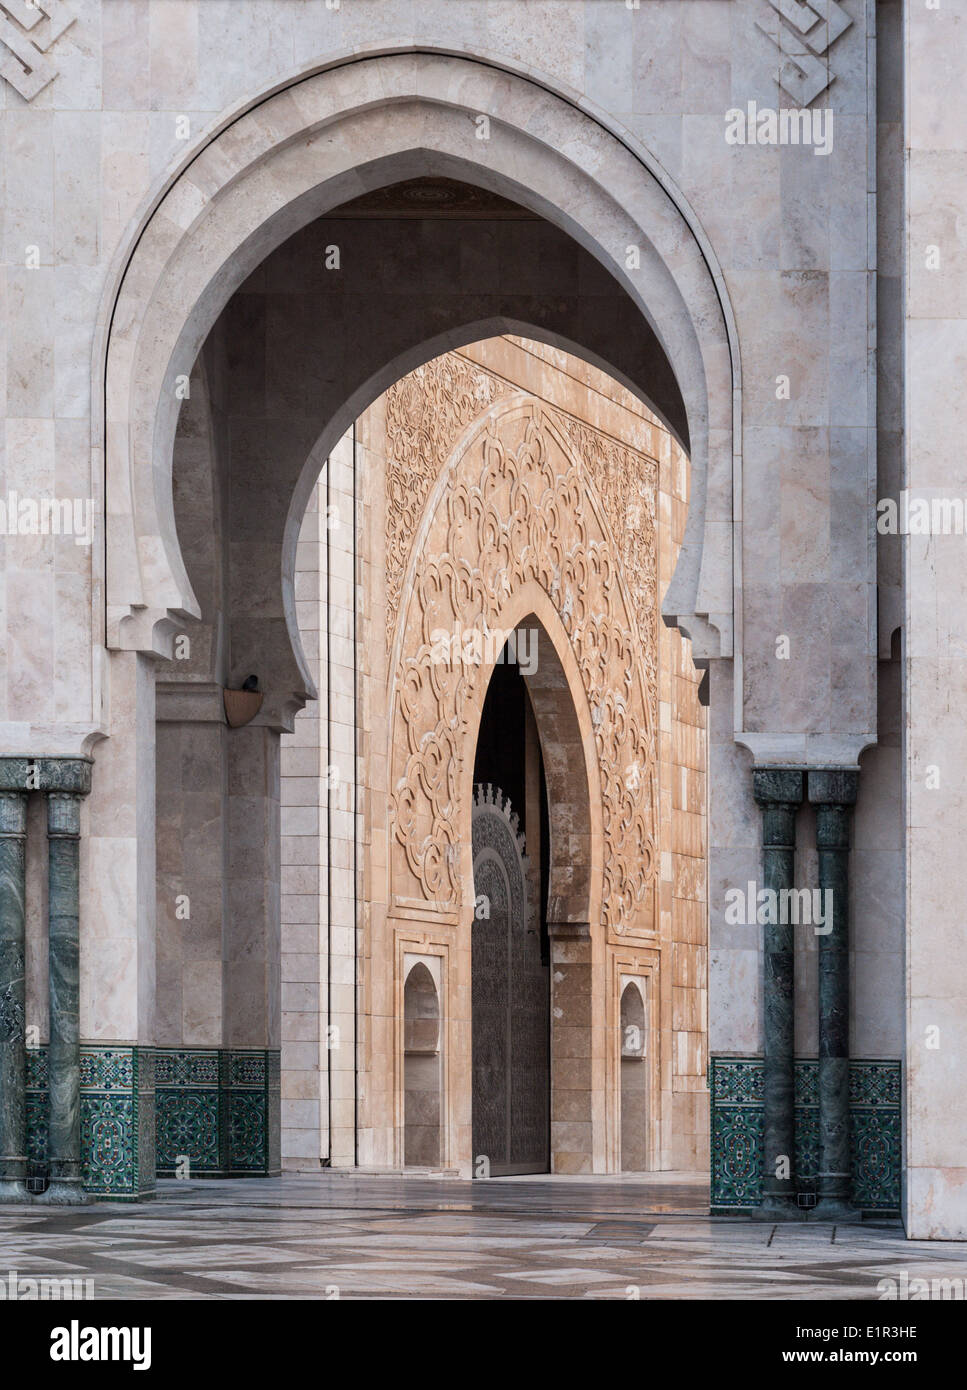 Arcades dans la Mosquée Hassan II, Casablanca, Maroc Banque D'Images